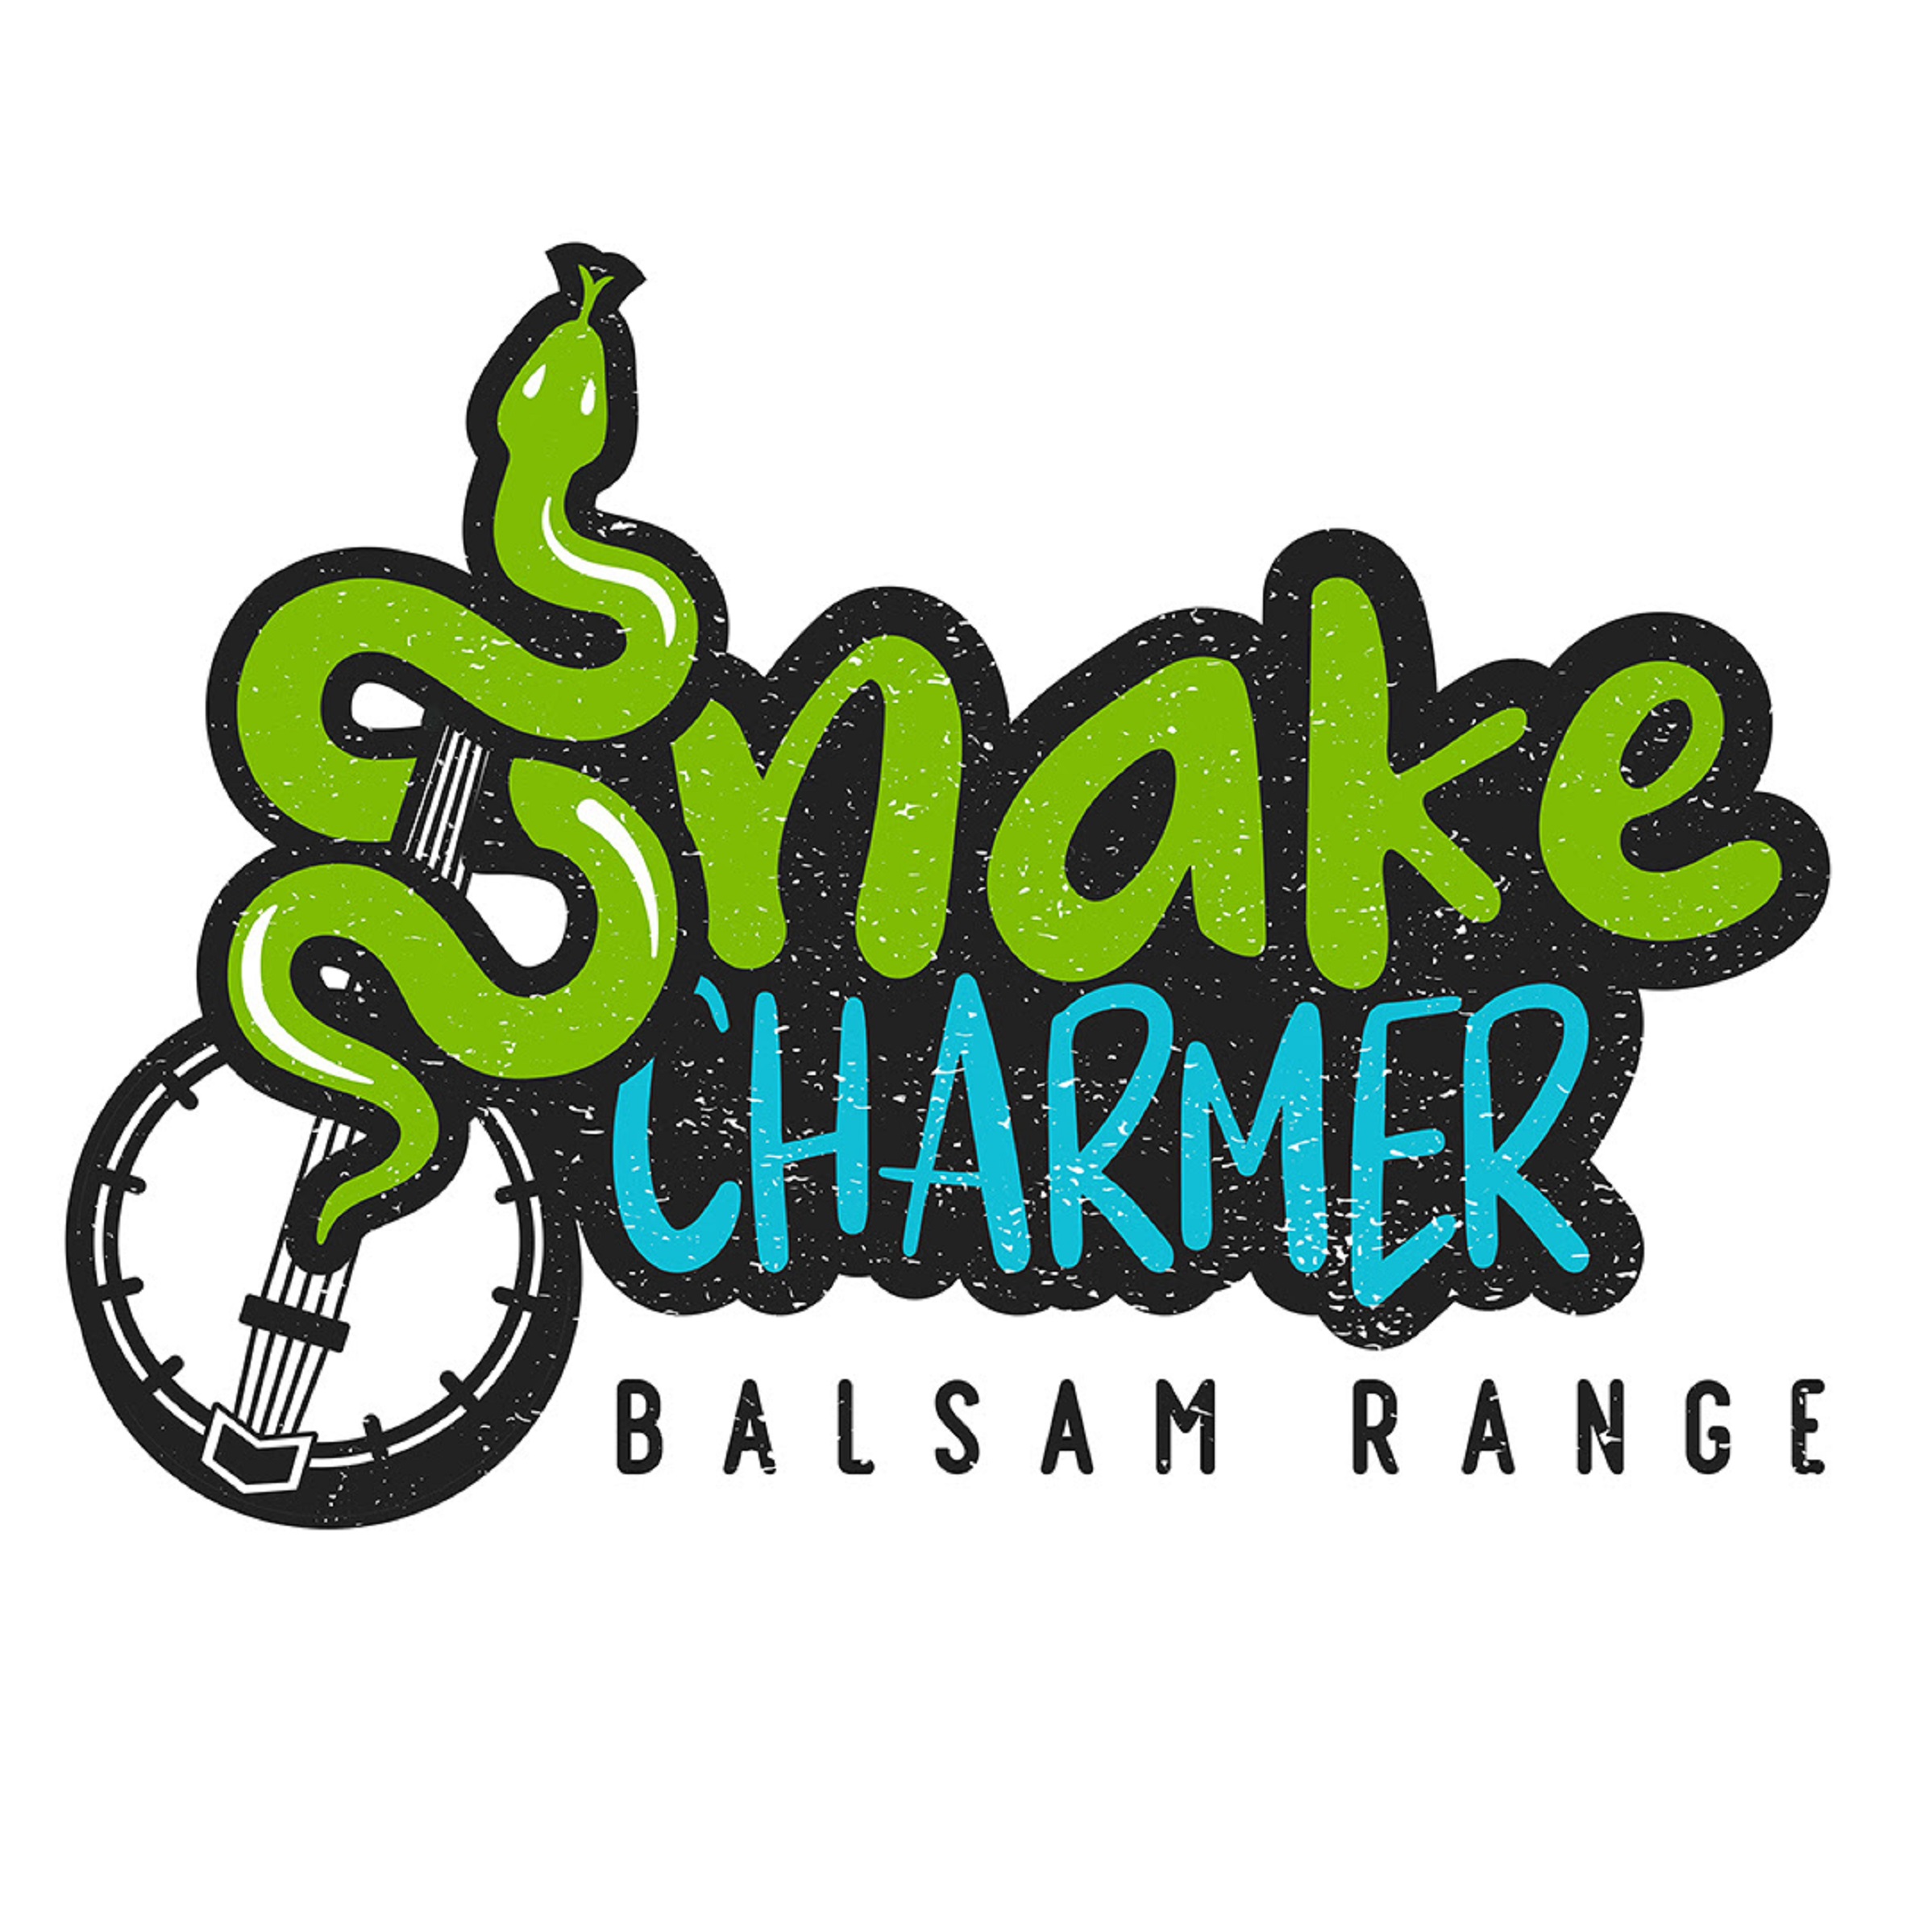 Balsam Range's “Snake Charmer” shows off their whimsical side